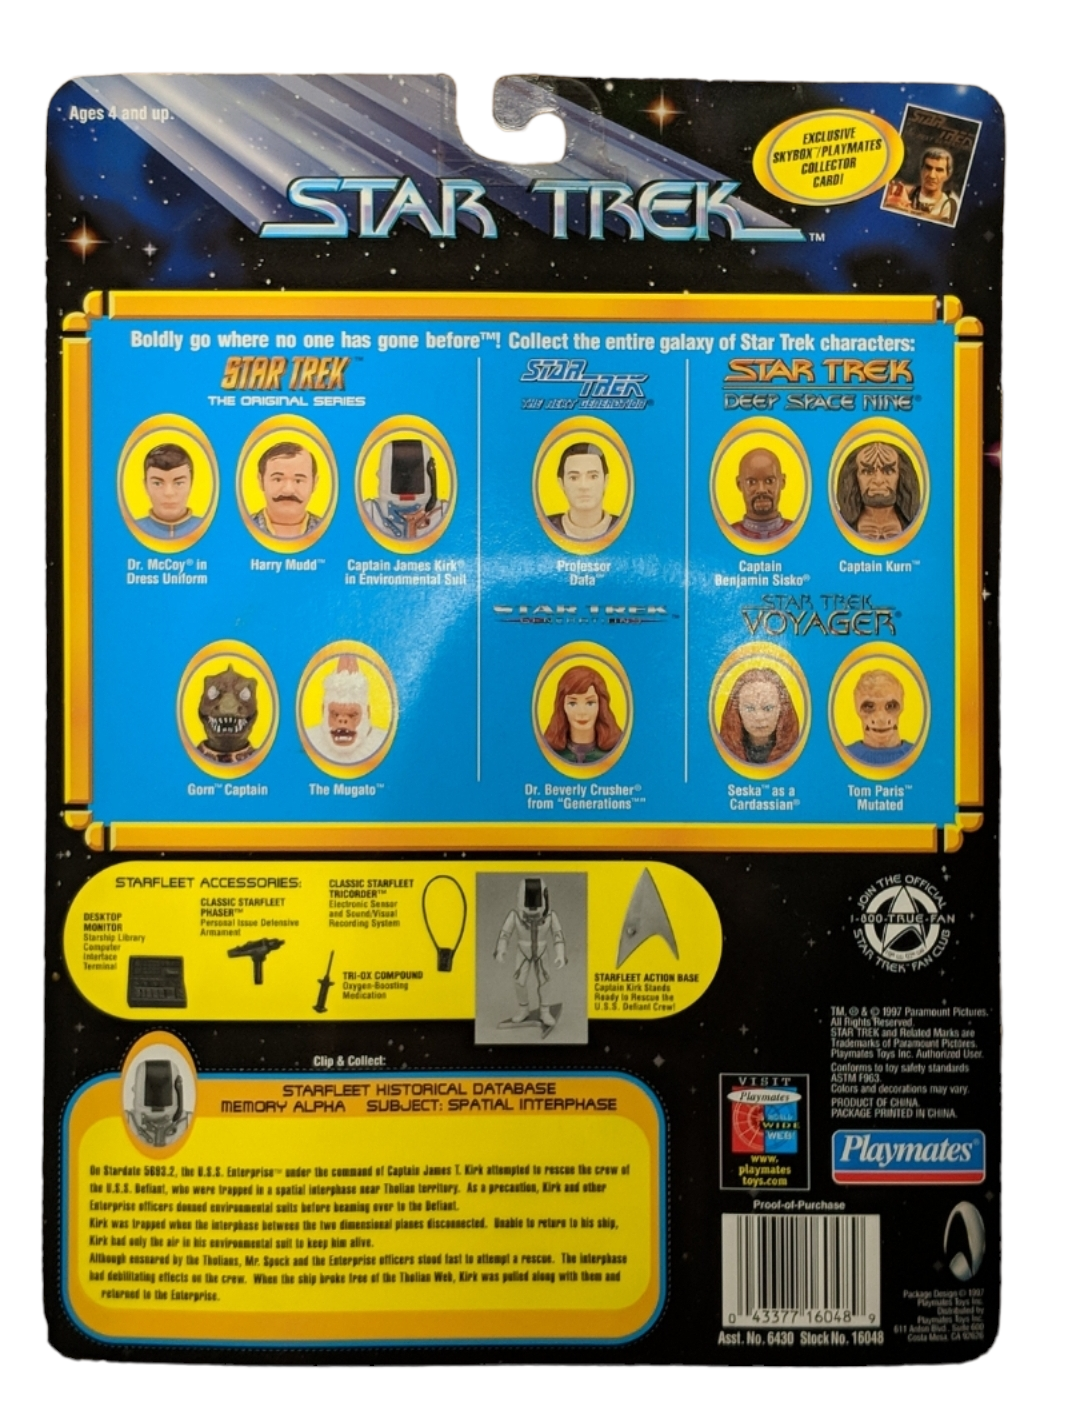 NEW *Star Trek: "Captain Kirk" 1997 Action Figure